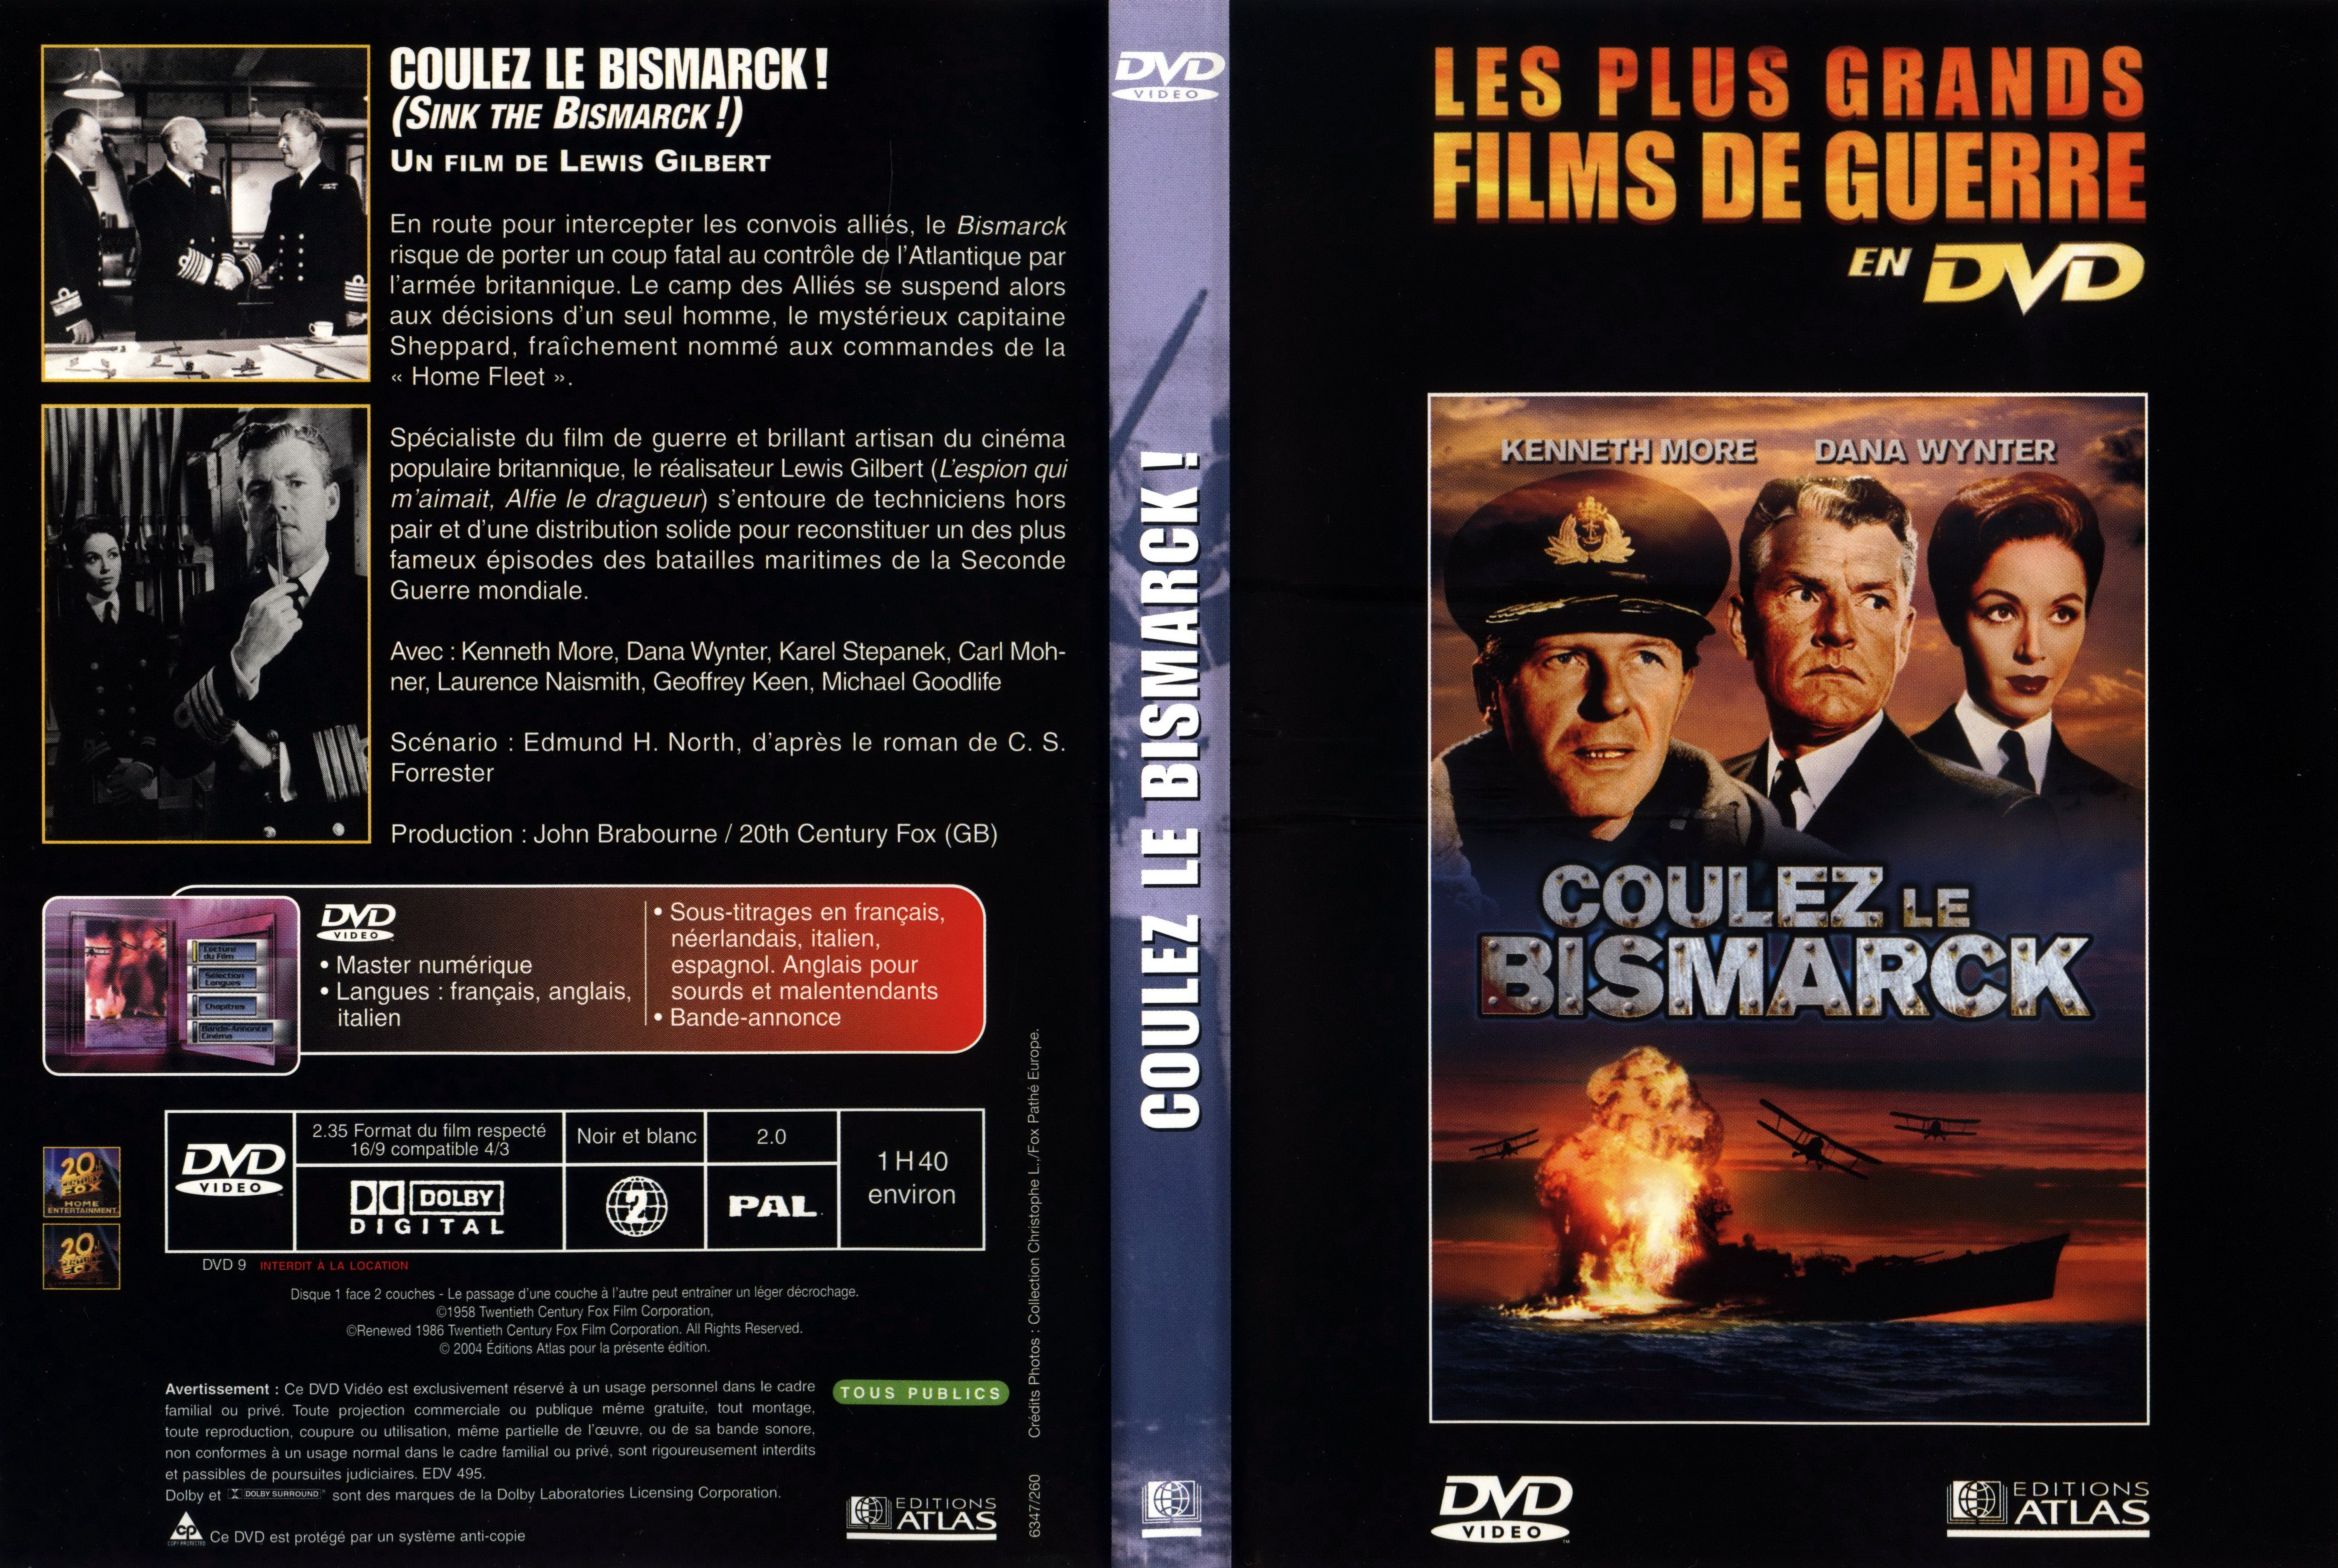 Jaquette DVD Coulez le Bismarck v3